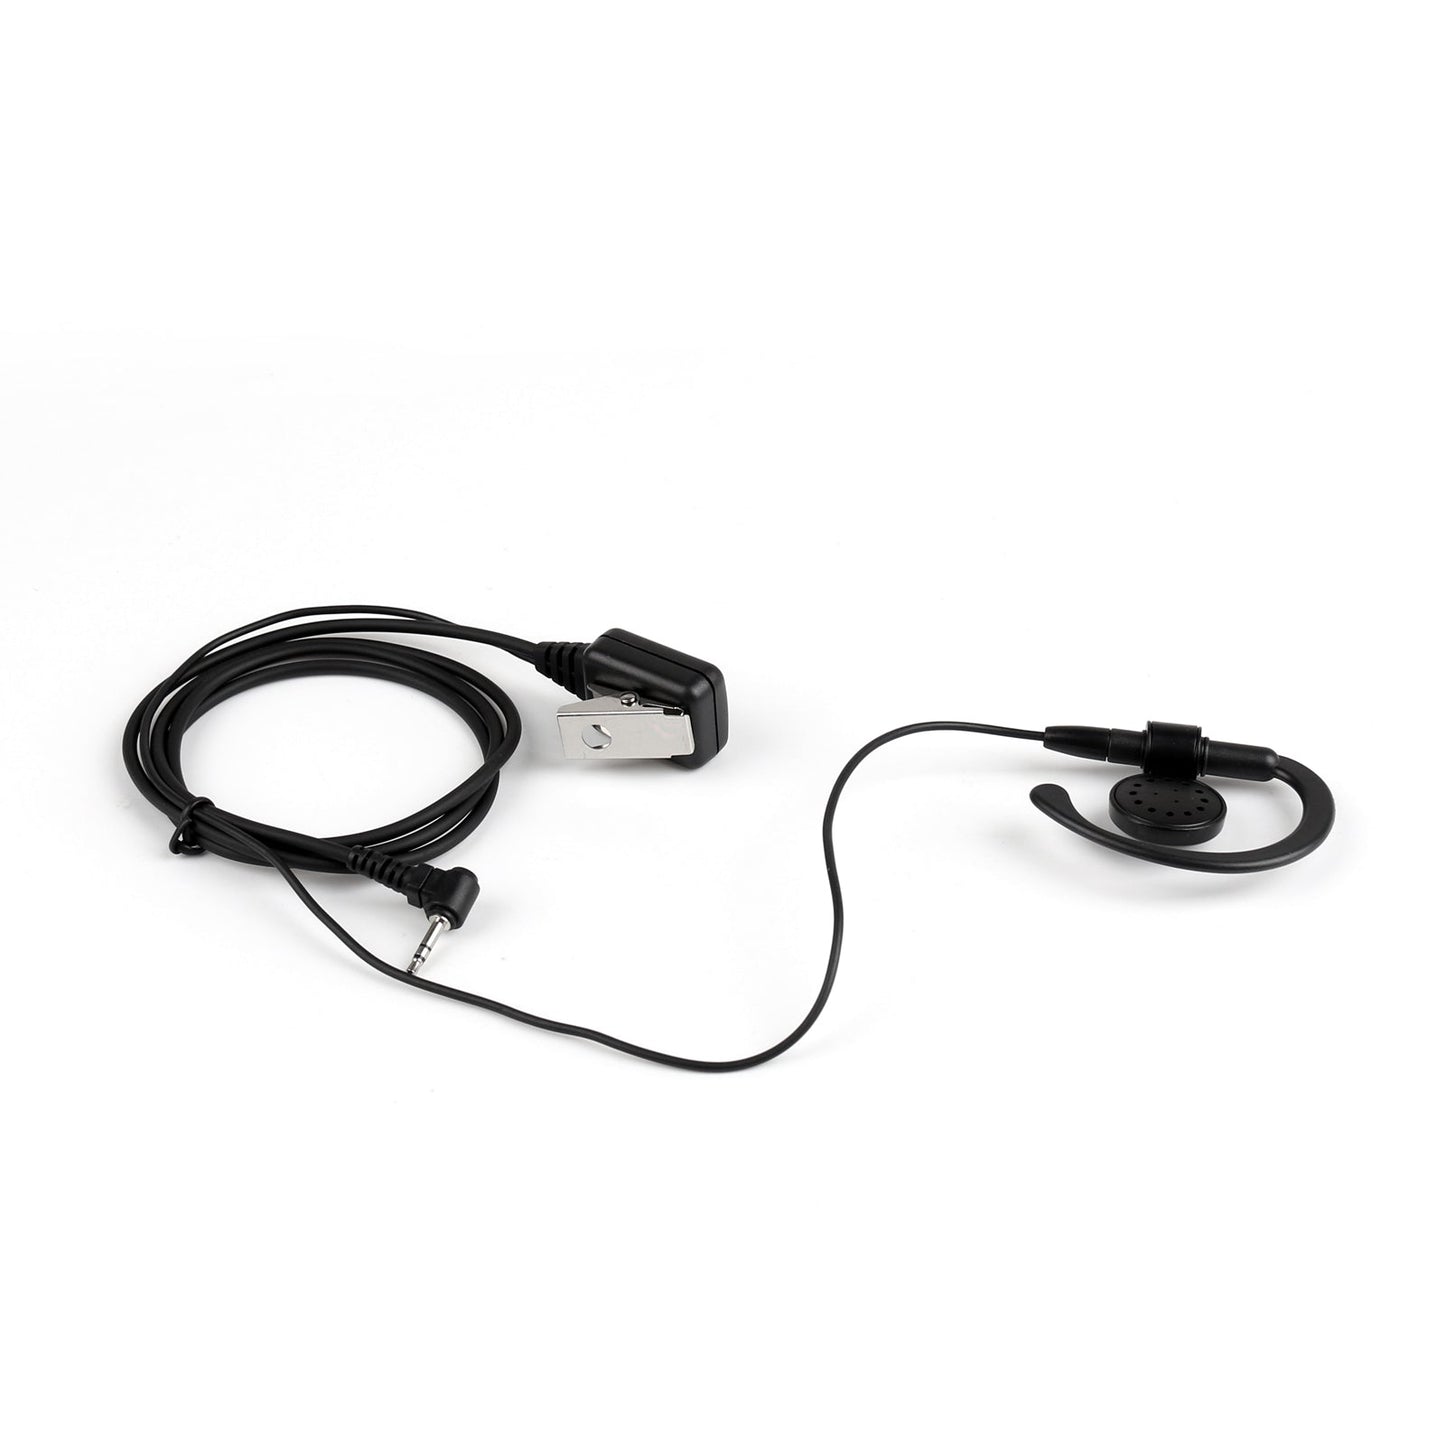 1 pièces 2.5mm crochet d'oreille écouteur casque Ptt micro pour Motorola T6200 T6220 T5422 Radio